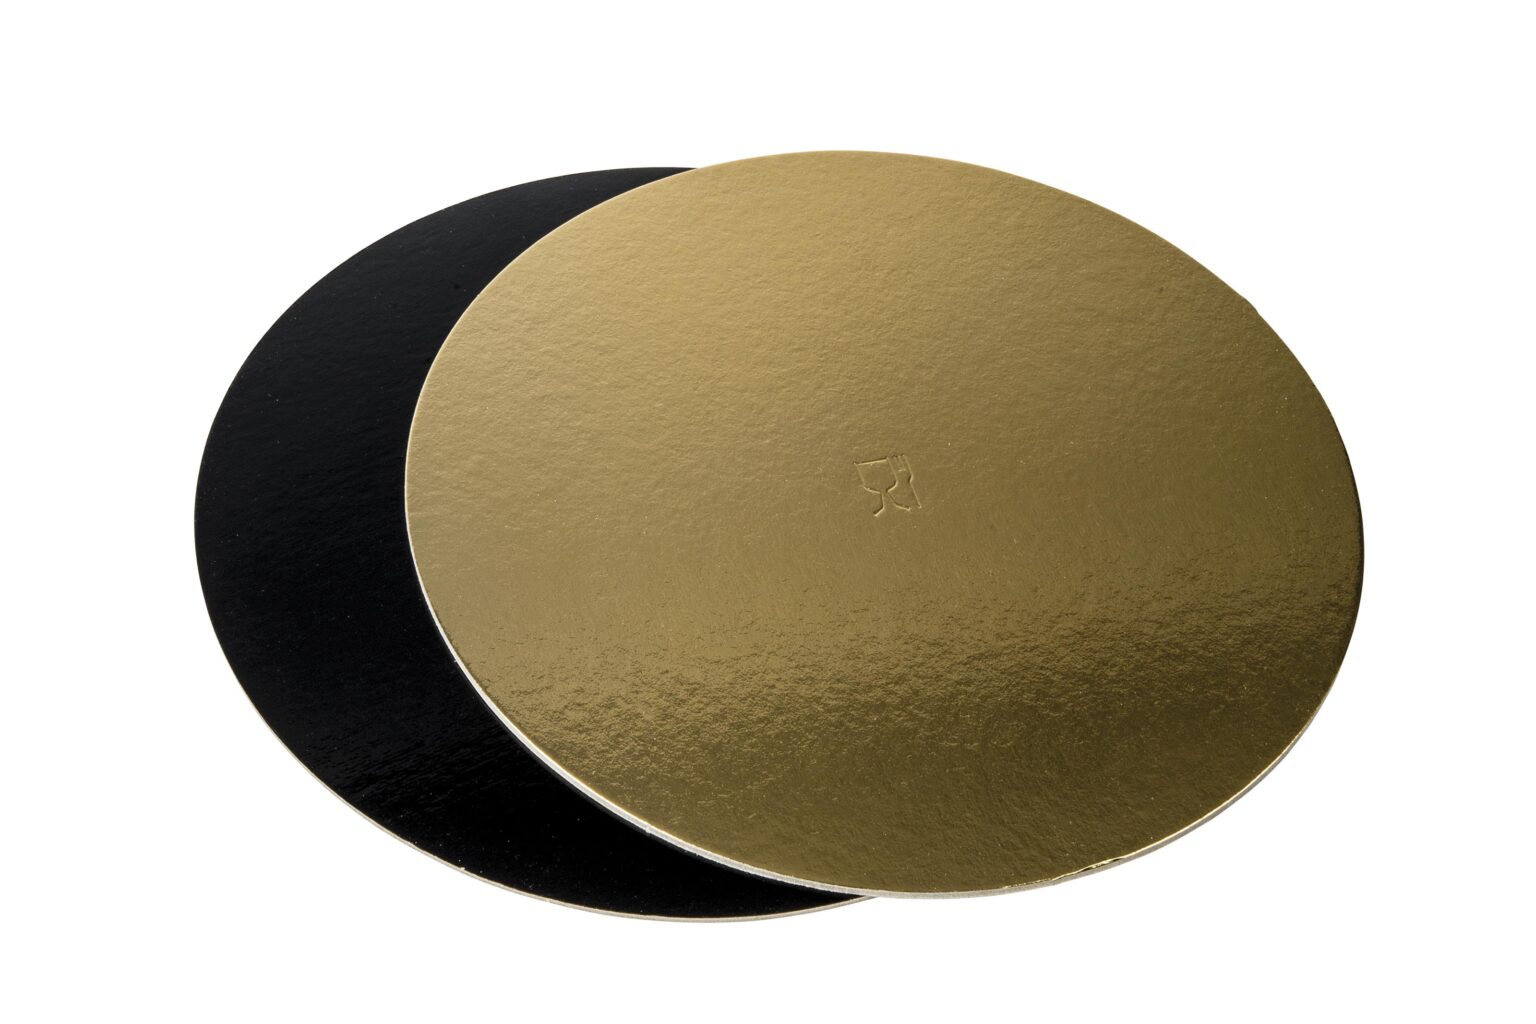 Discuri groase auriu/negru - Discuri groase auriu/negru 2400 gr OE24cm - 10 buc/set